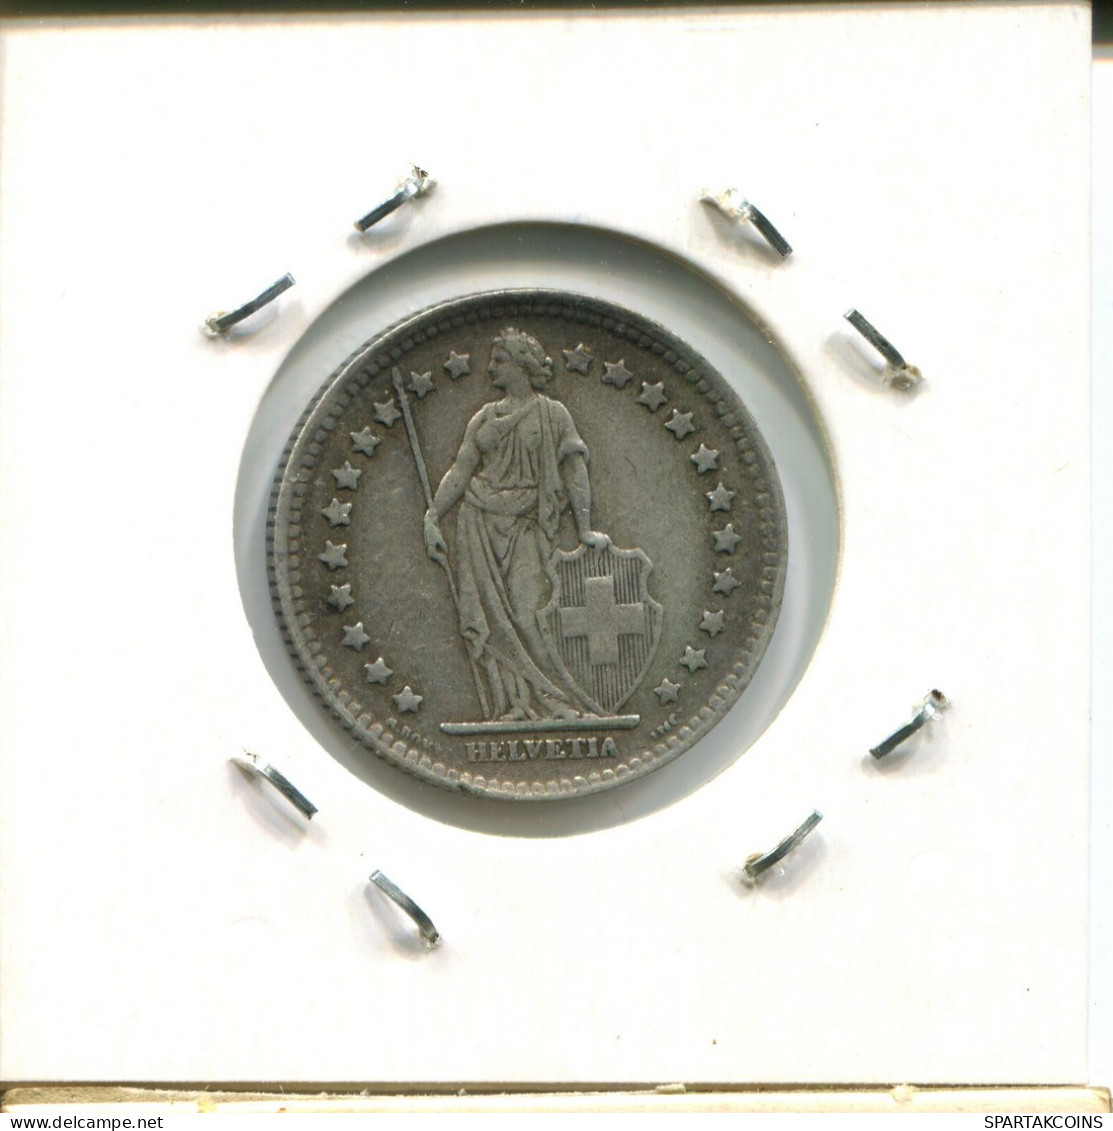 1 FRANC 1944 B SWITZERLAND Coin SILVER #AY043.3.U.A - Autres & Non Classés